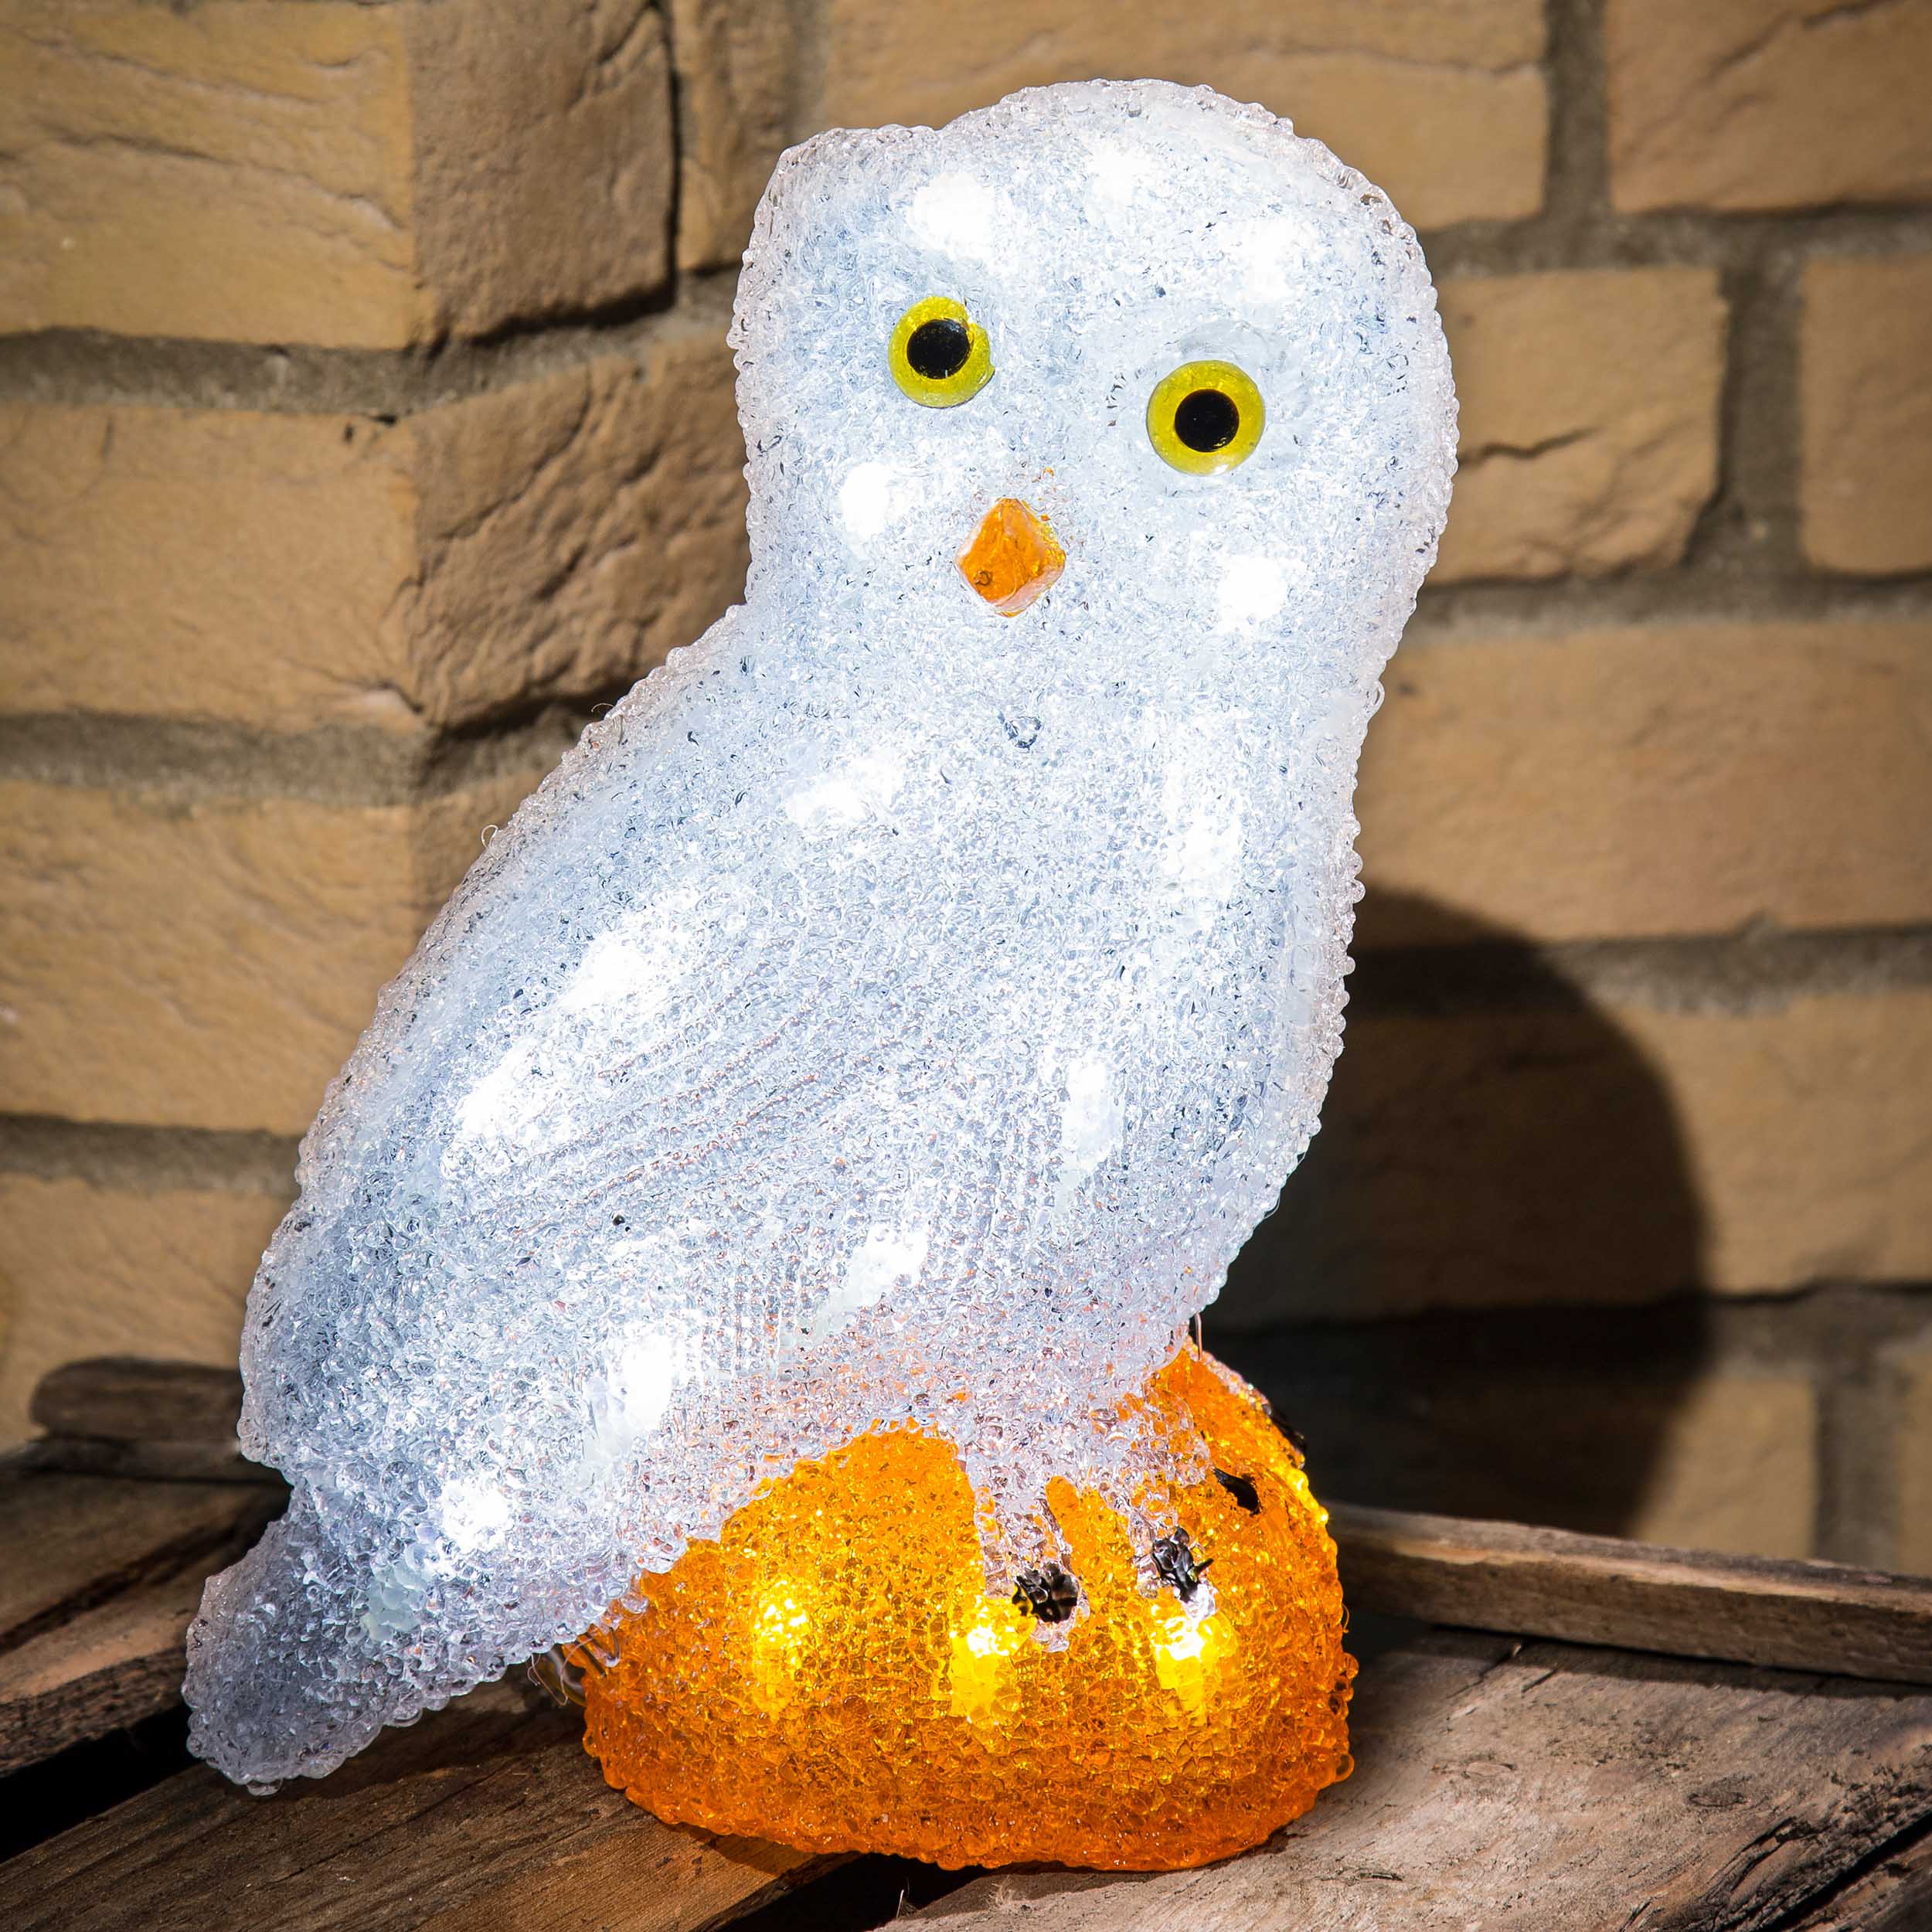 Acrylic LED owl, 32 coldwhite LEDs